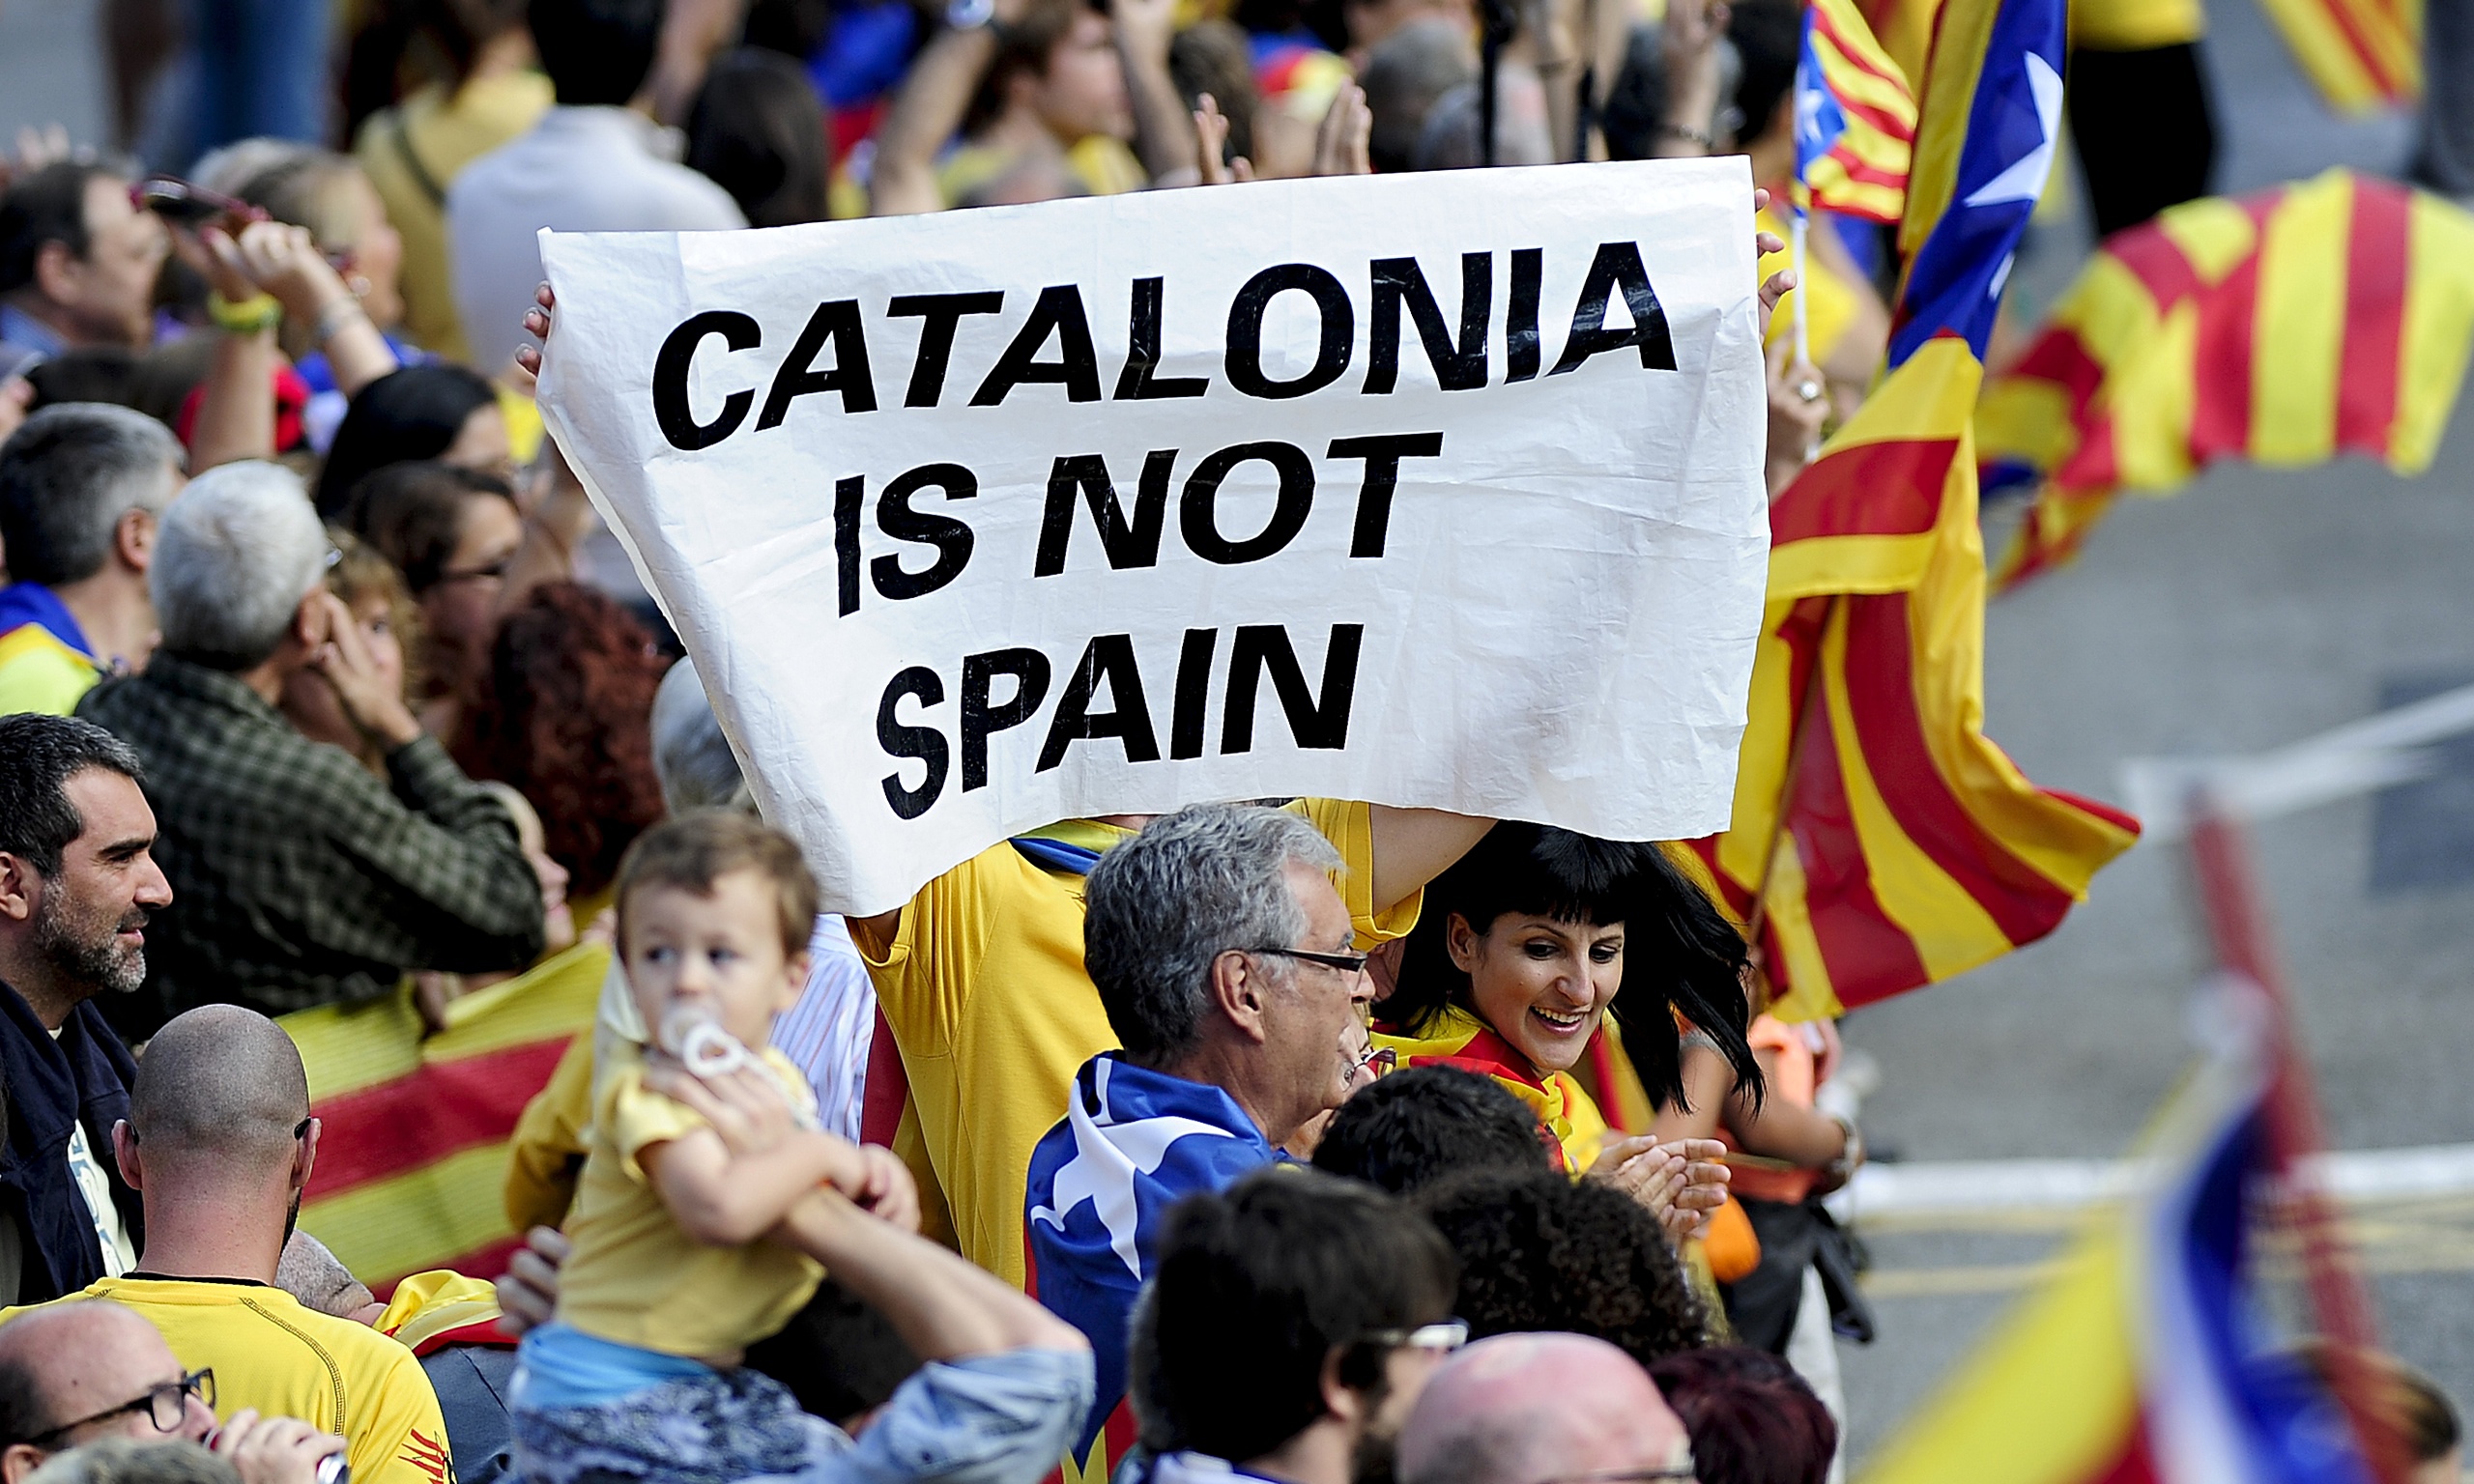 حكومة كتالونيا تكشف عن نسبة الذين أيدوا الاستقلال